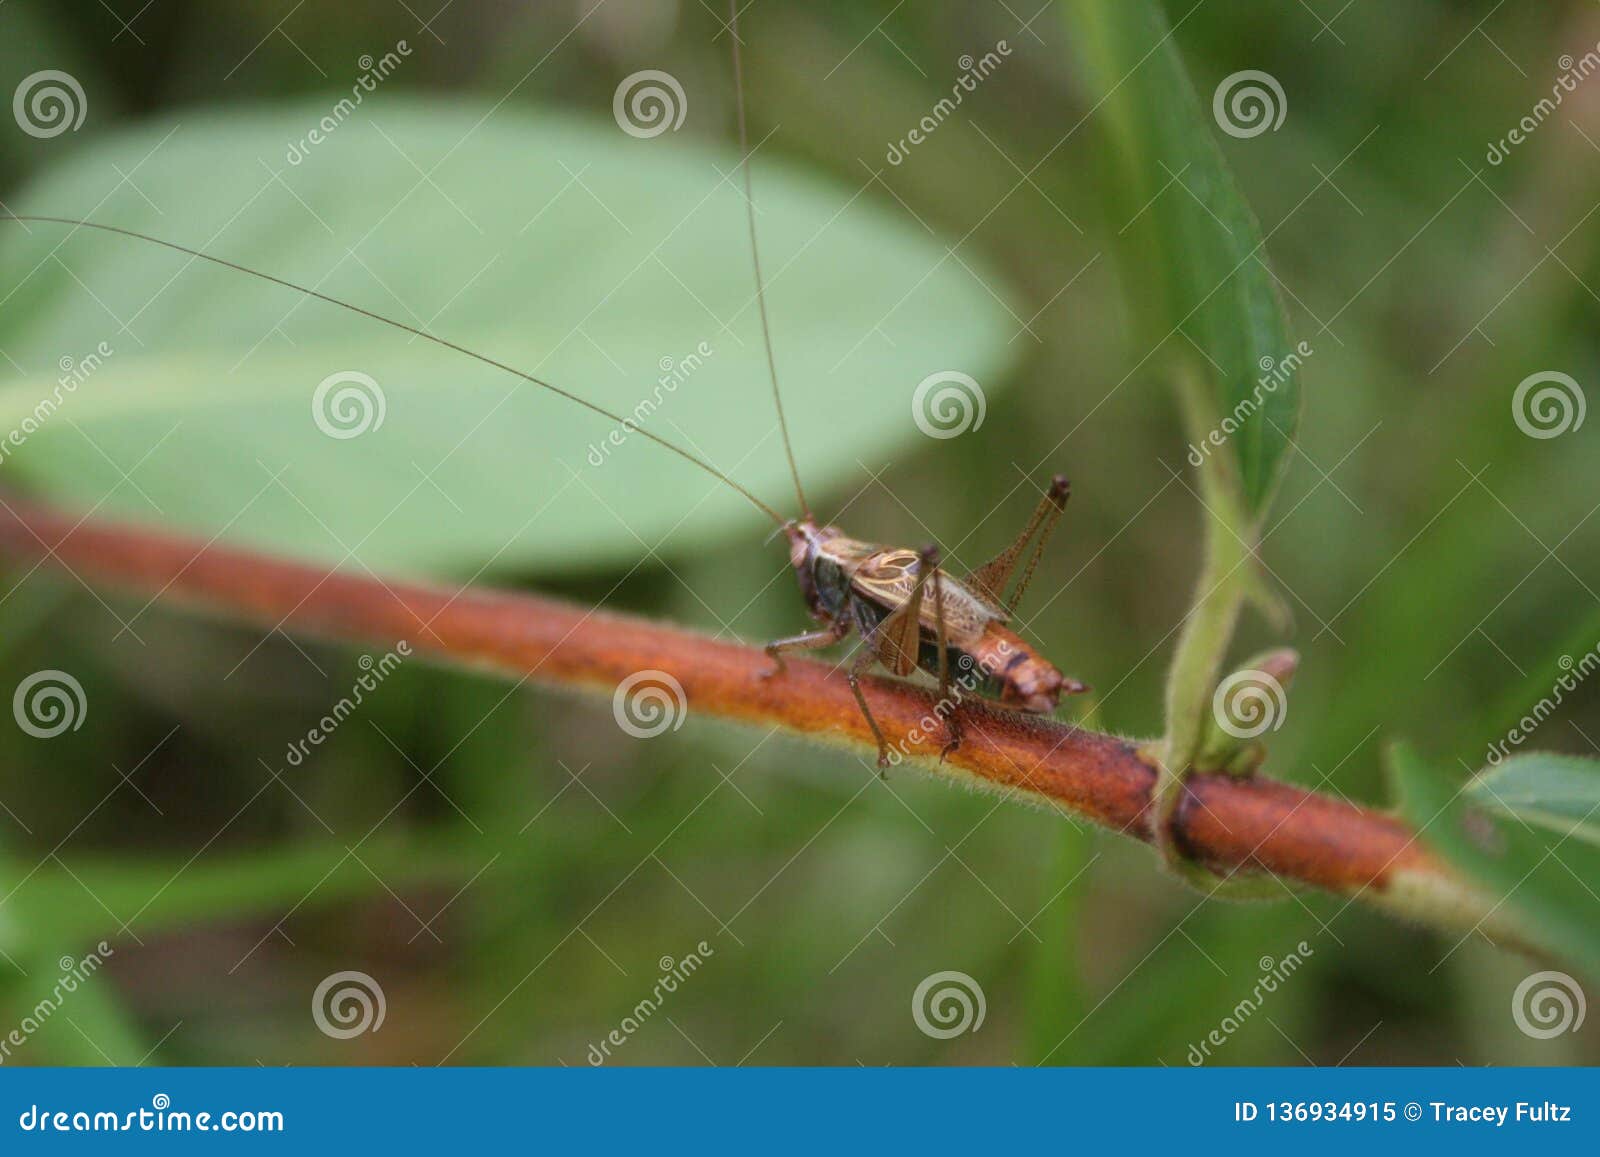 Grasshopper walk image. Image grasshopper -